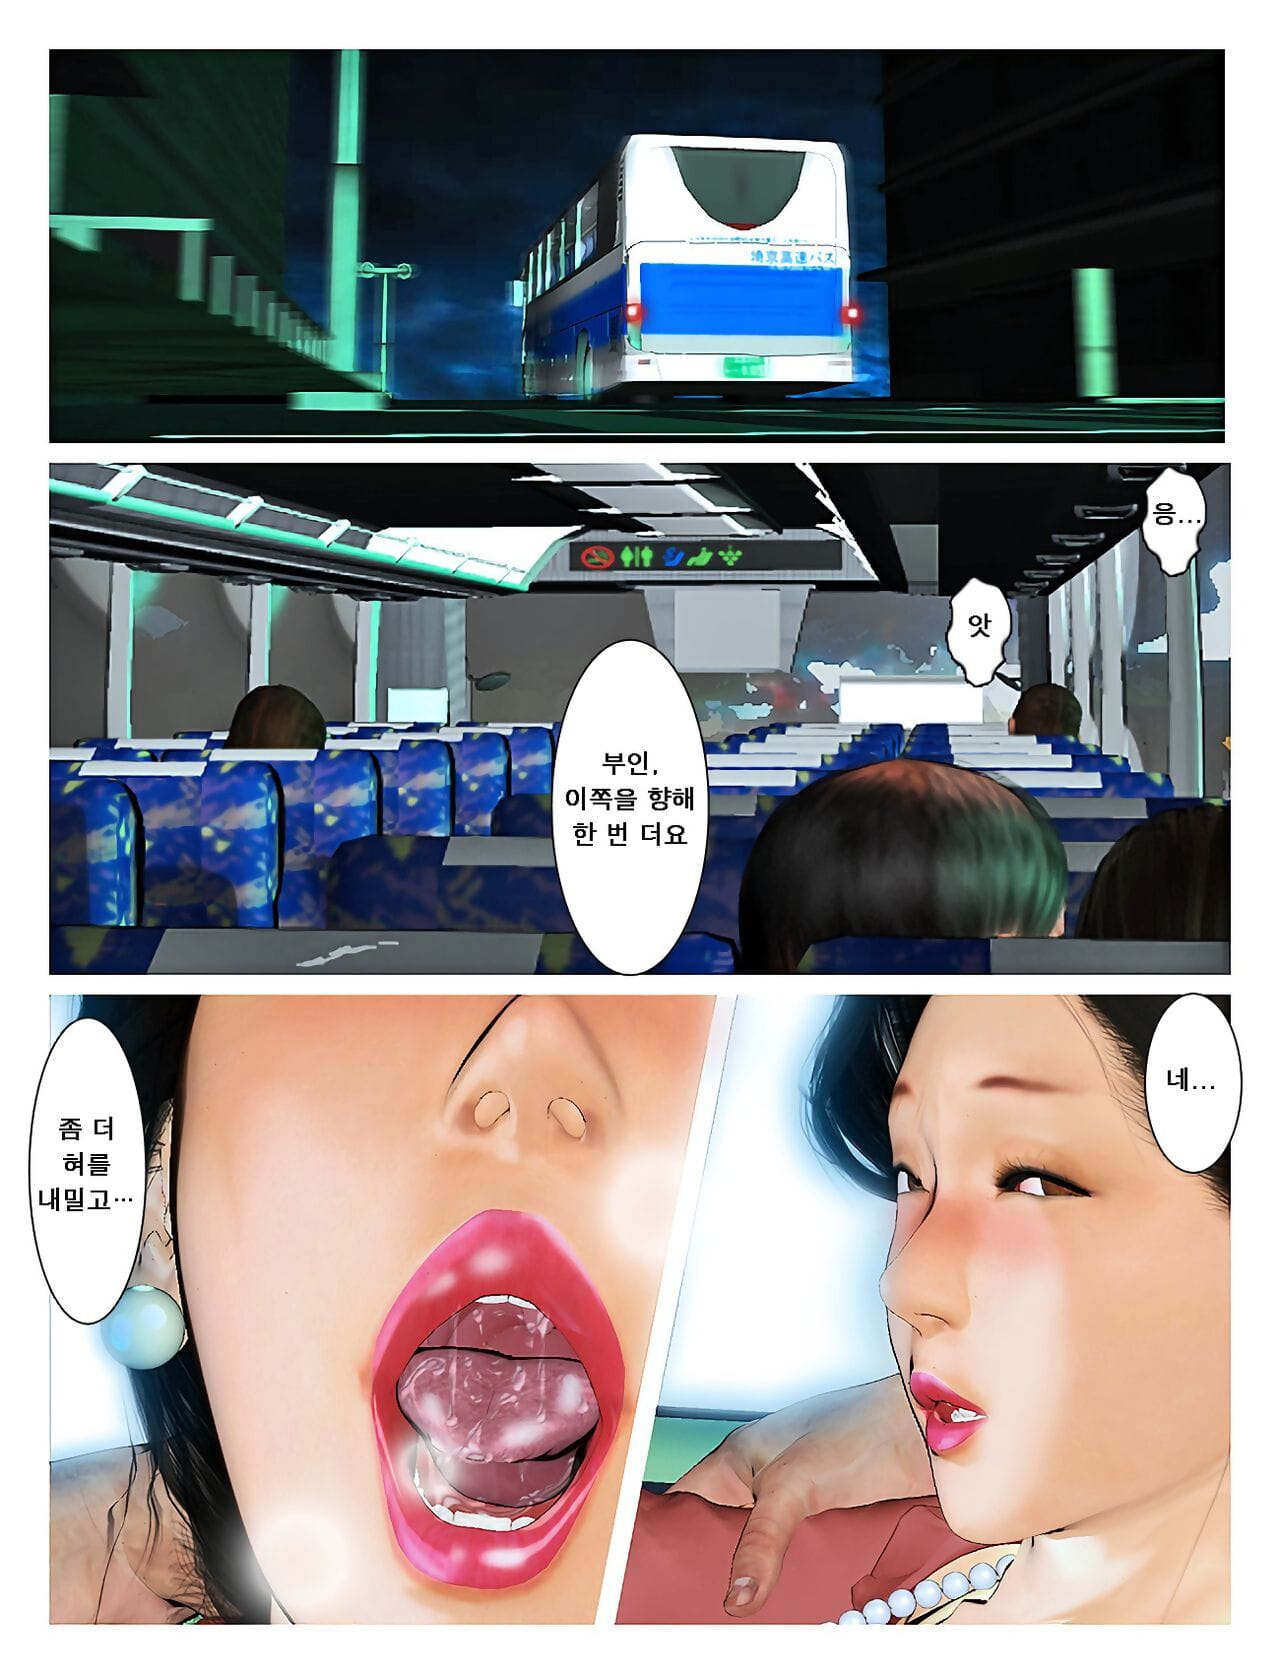 Kyou no misako san 2019:2 오늘의 미사코씨 2019:2 page 1